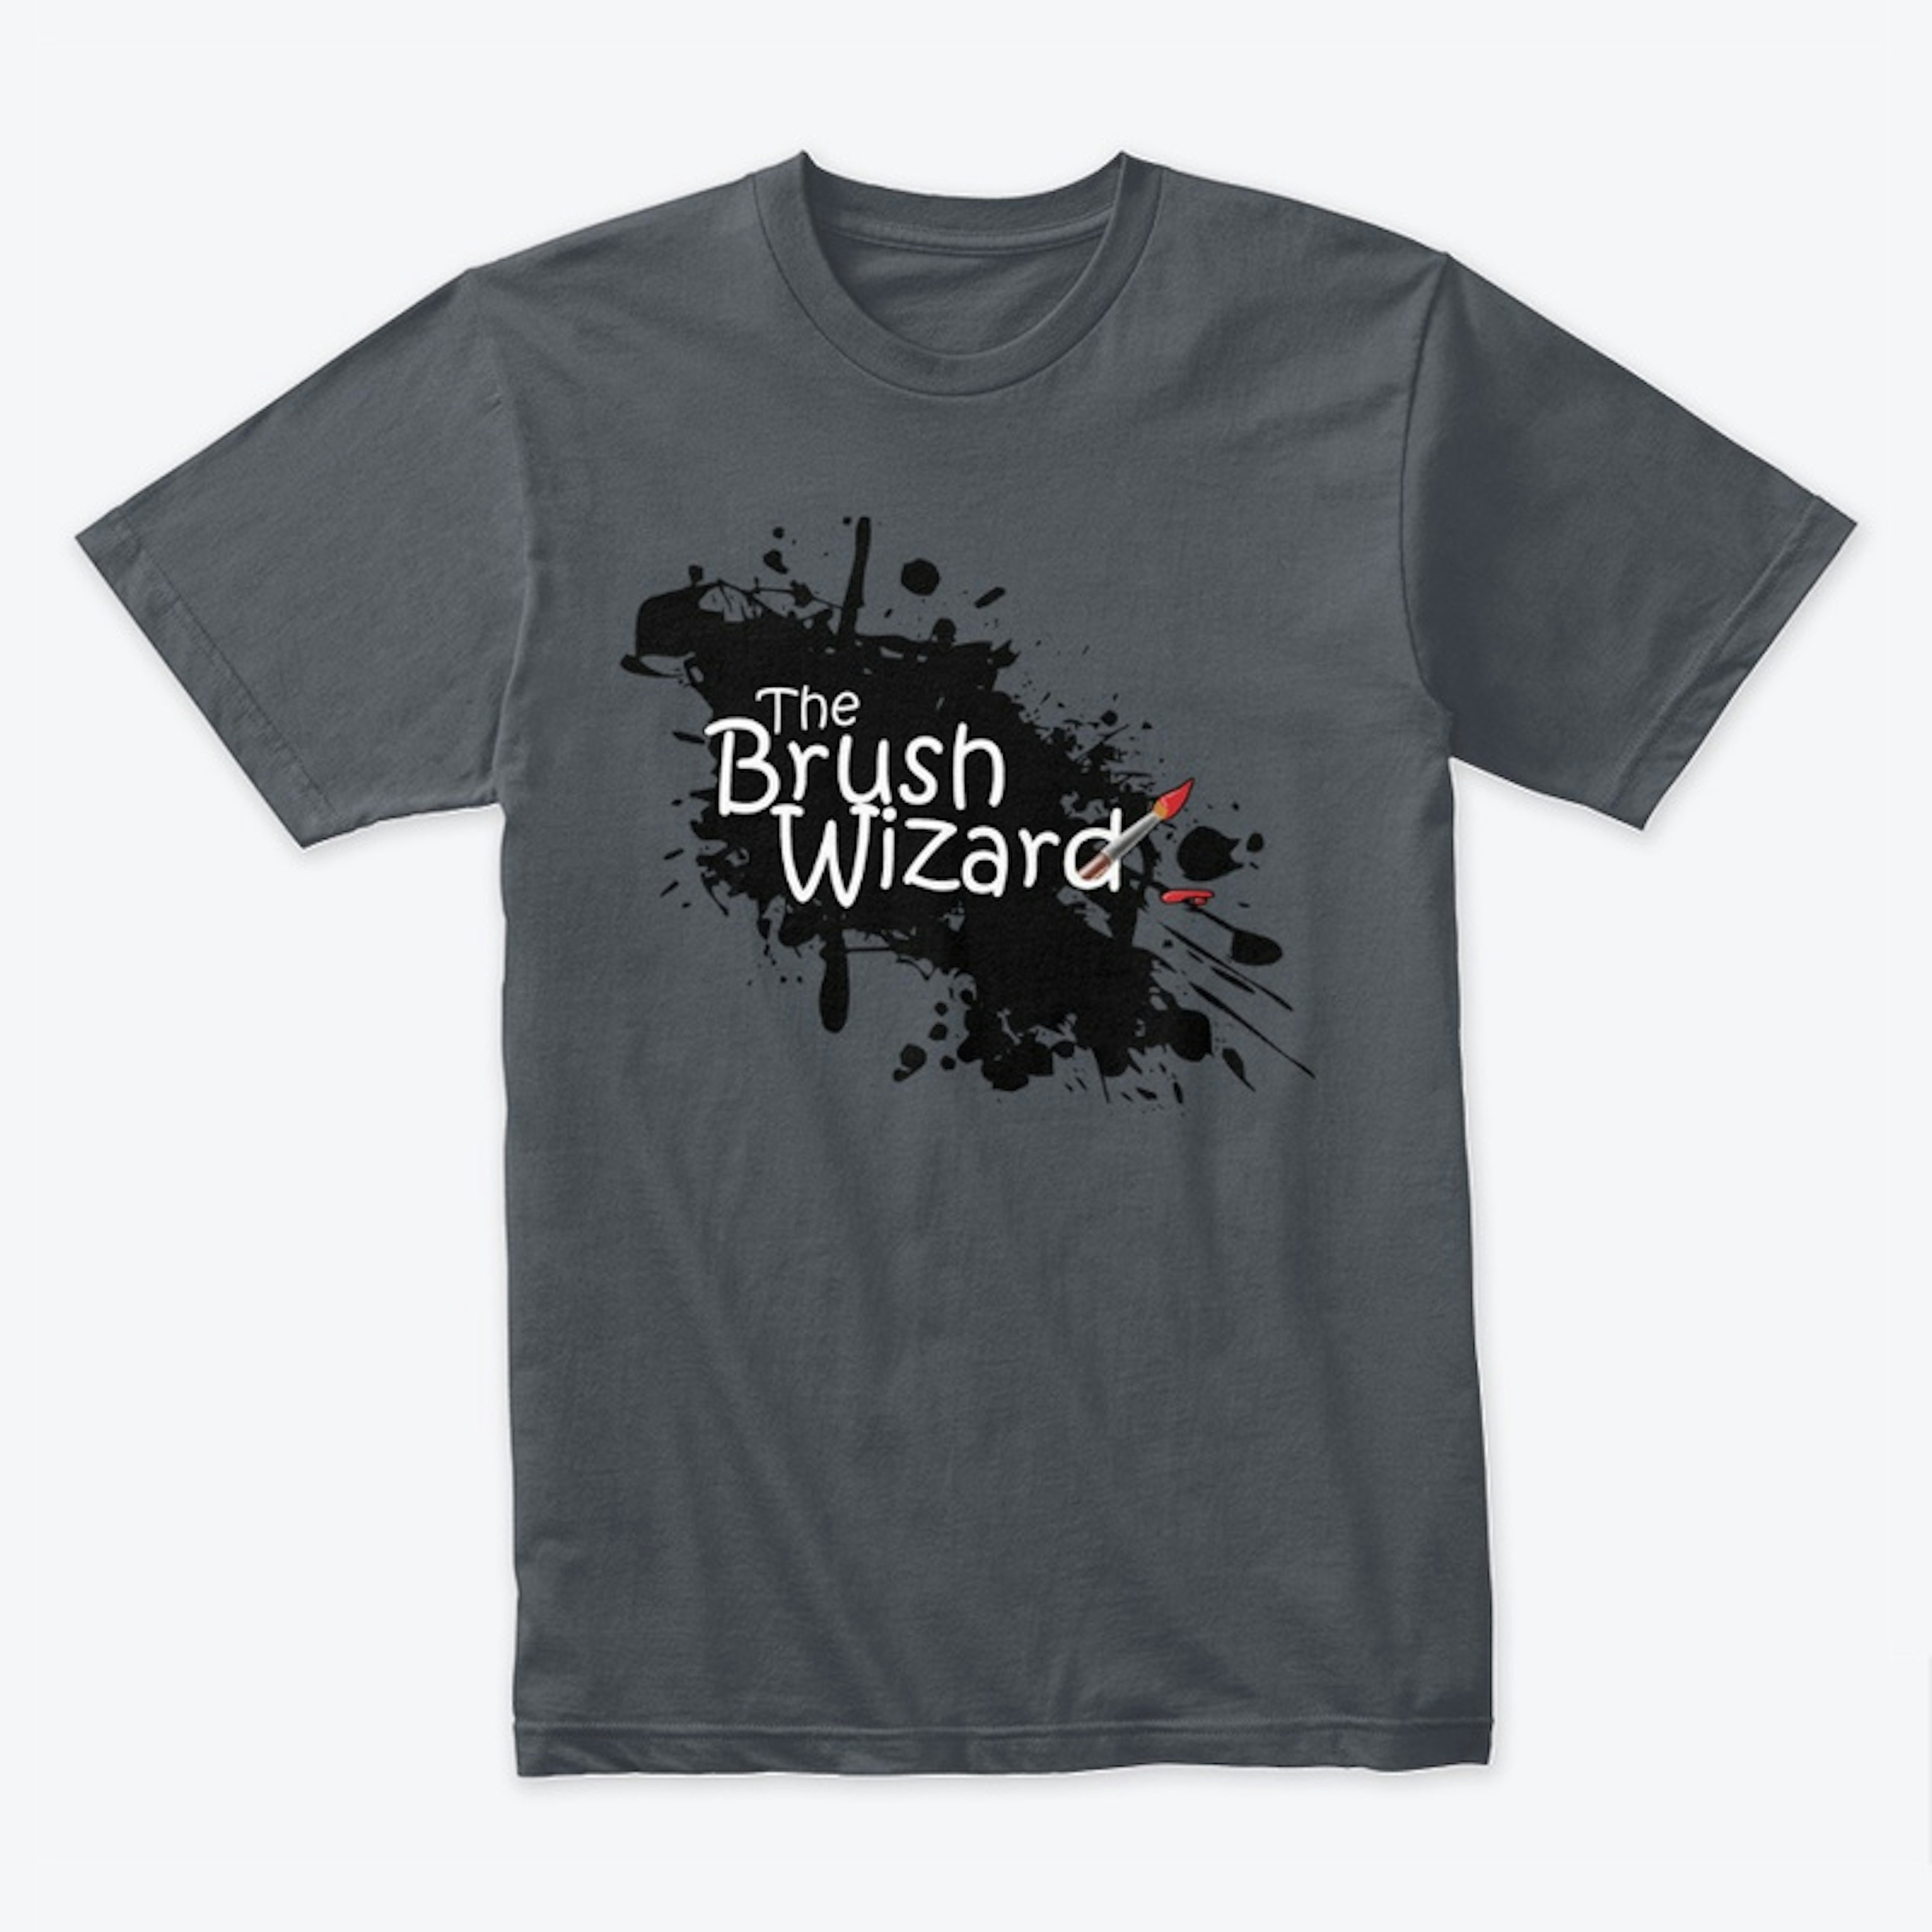 The Brush Wizard Tee